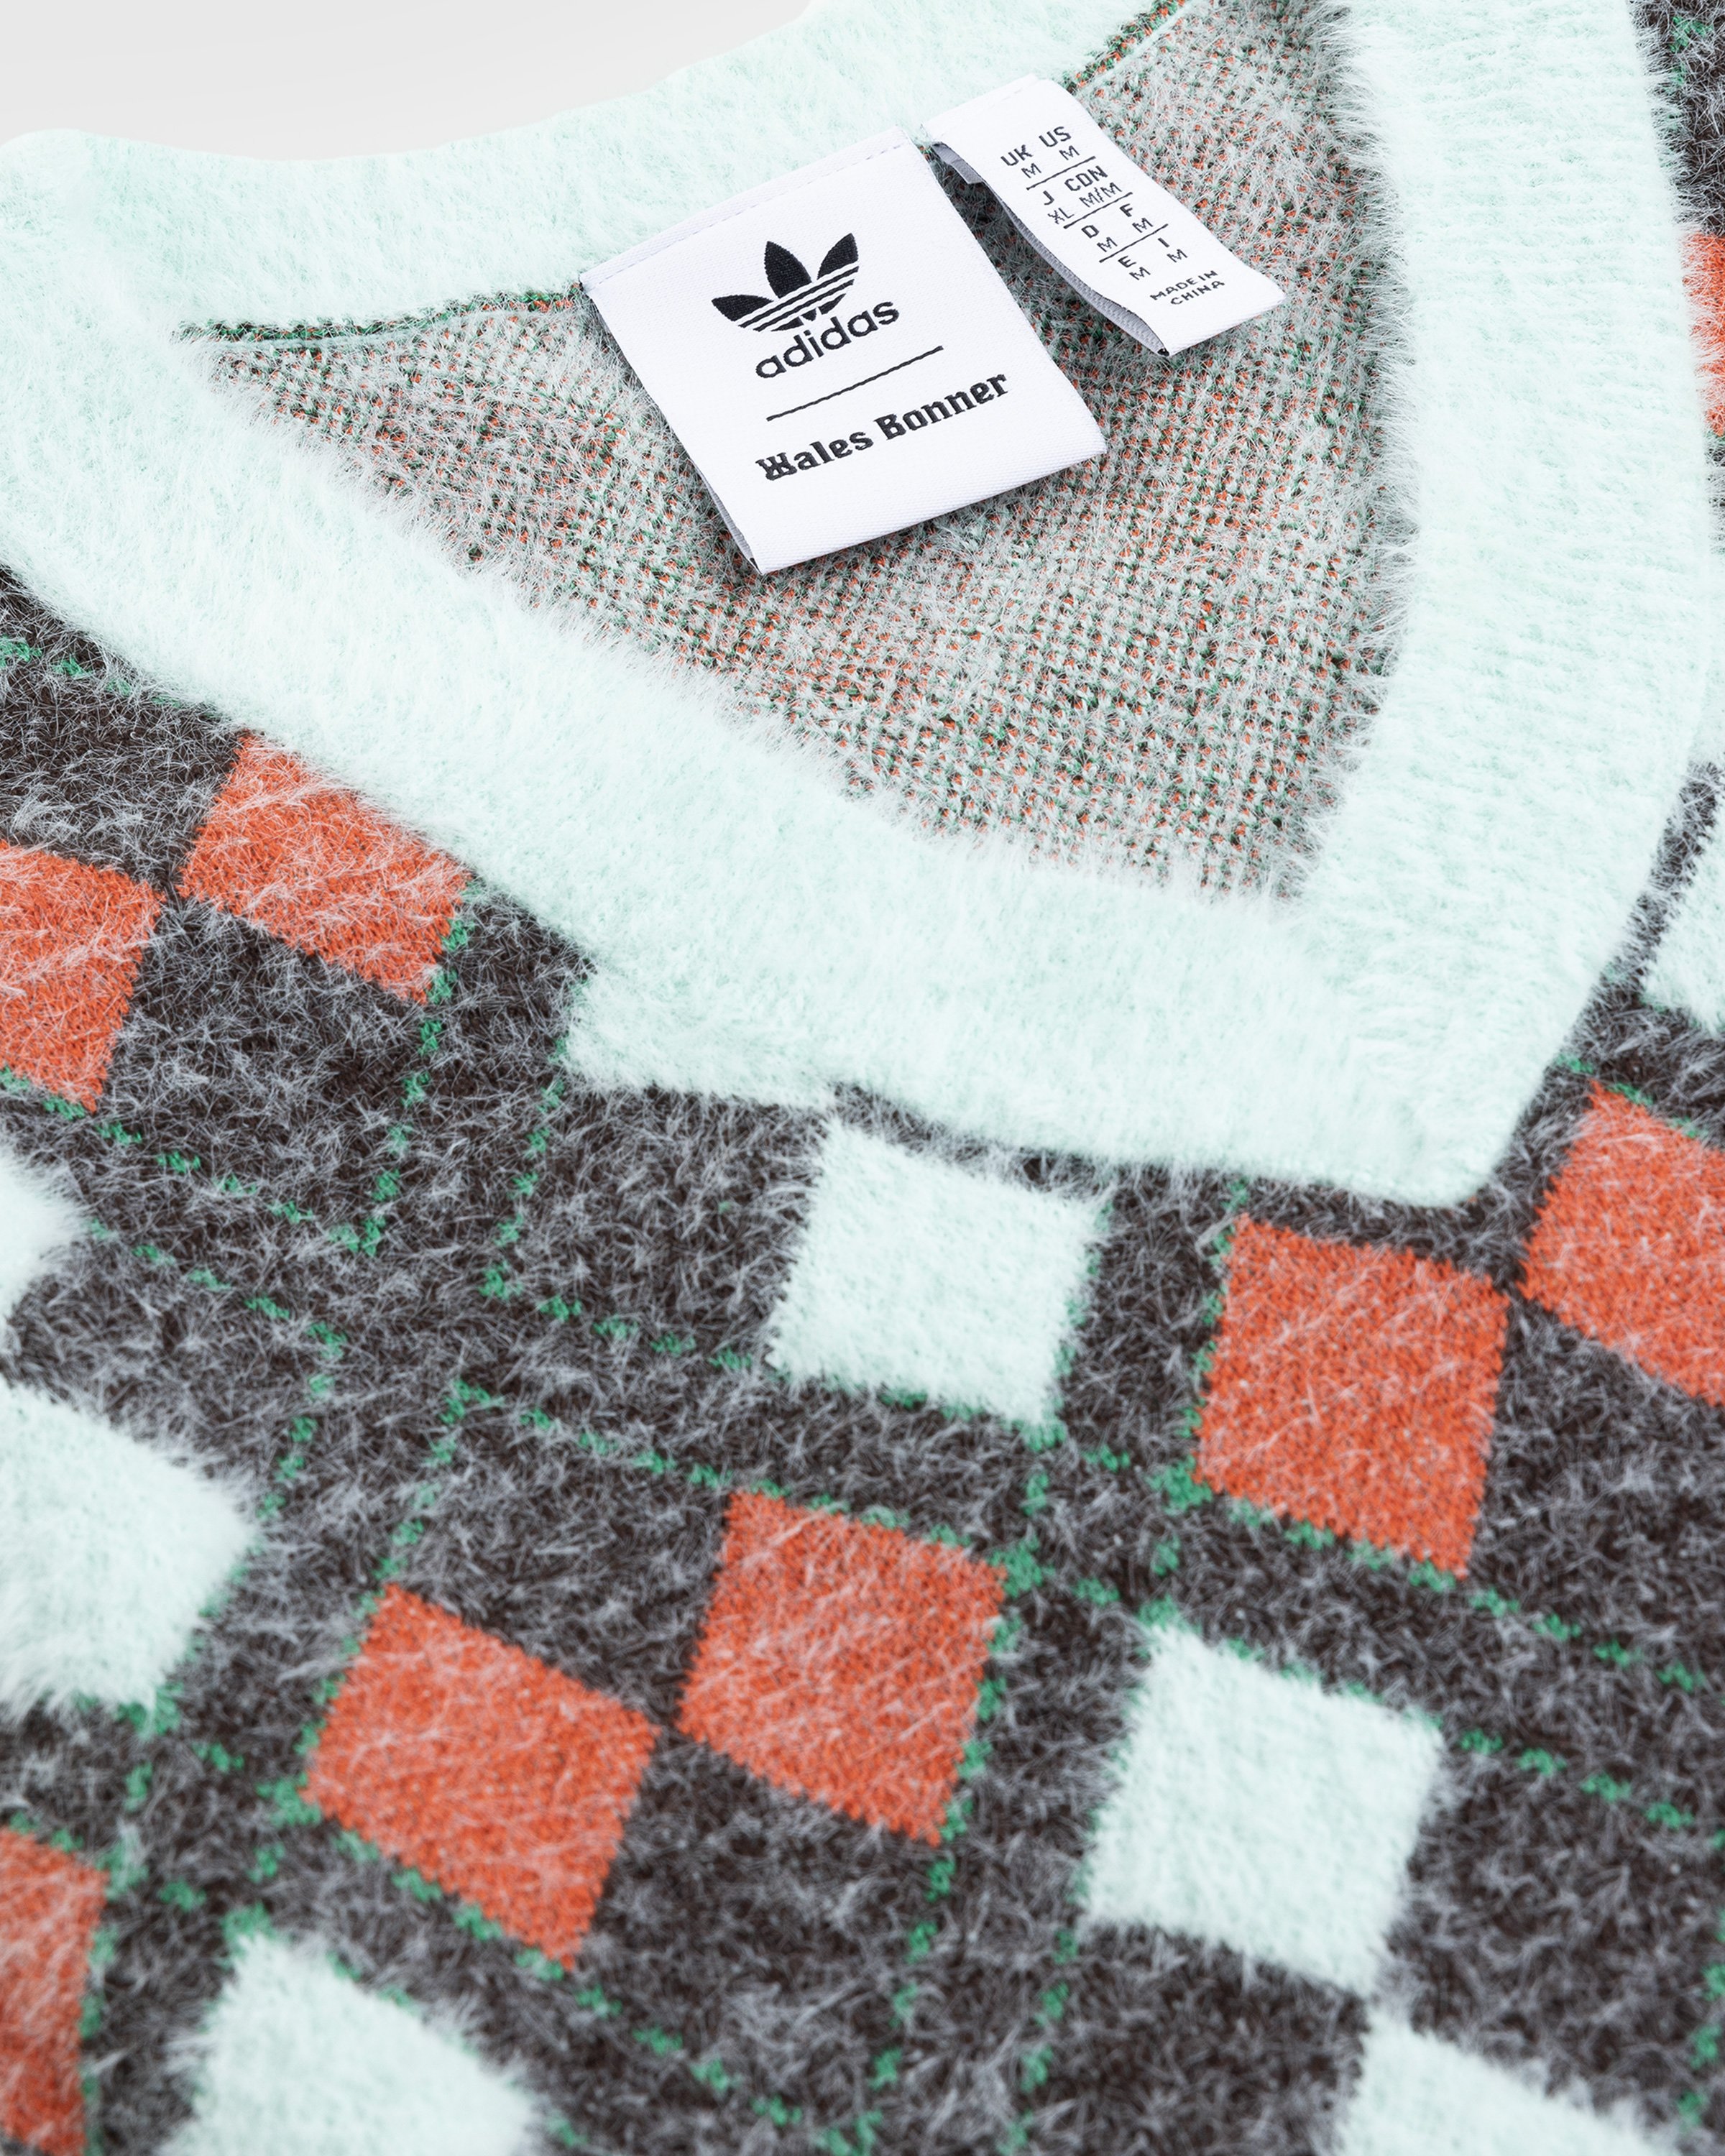 Adidas x Wales Bonner - Knit Argyle Vest Multi - Clothing - Multi - Image 5